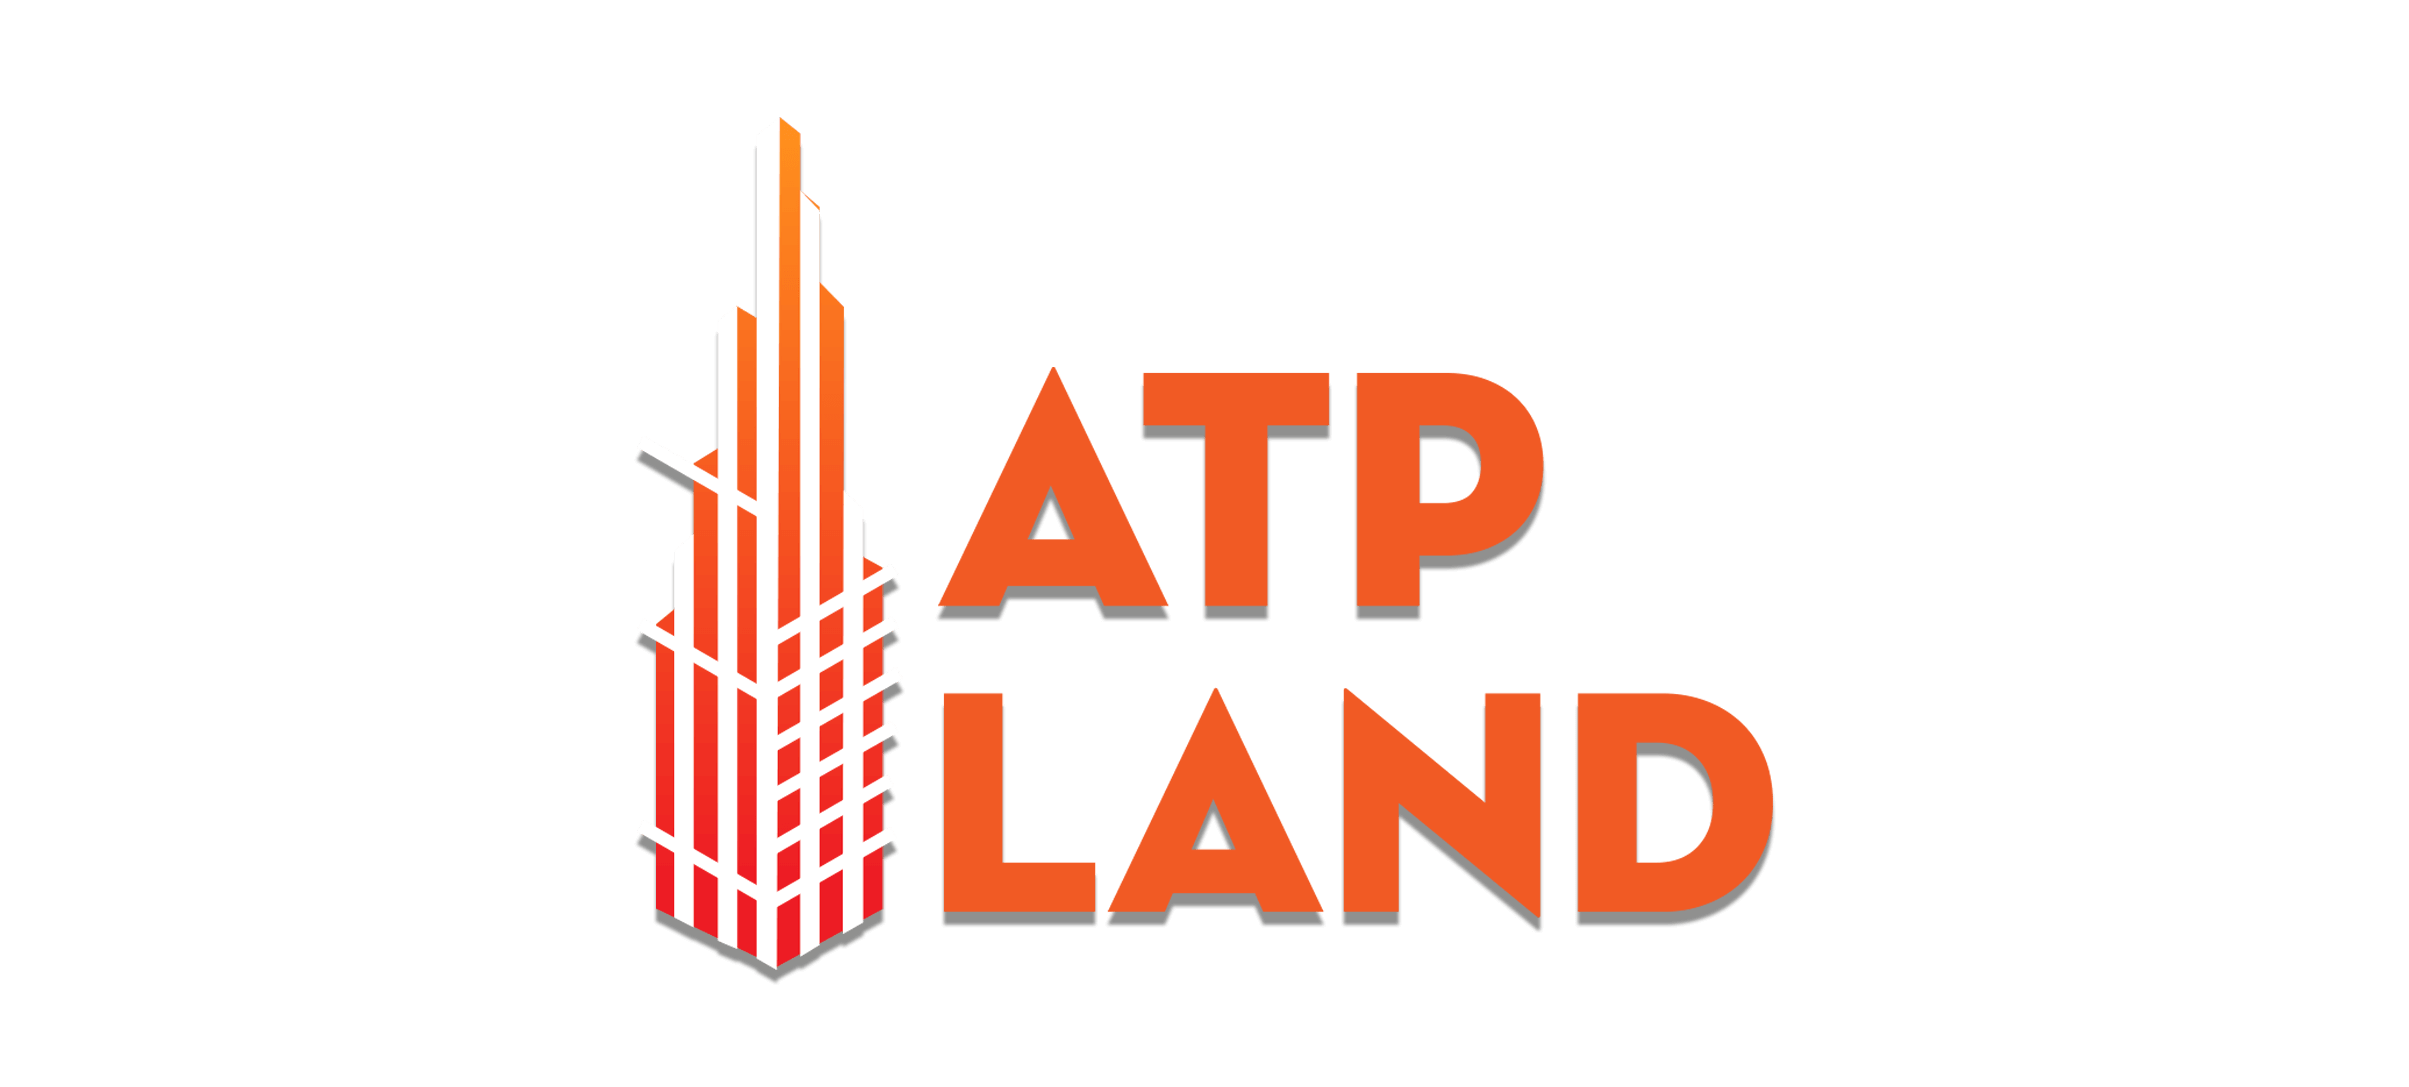 ATPLand | Nhà đất | Mua bán nhà đất | Cho thuê nhà đất | Bất động sản